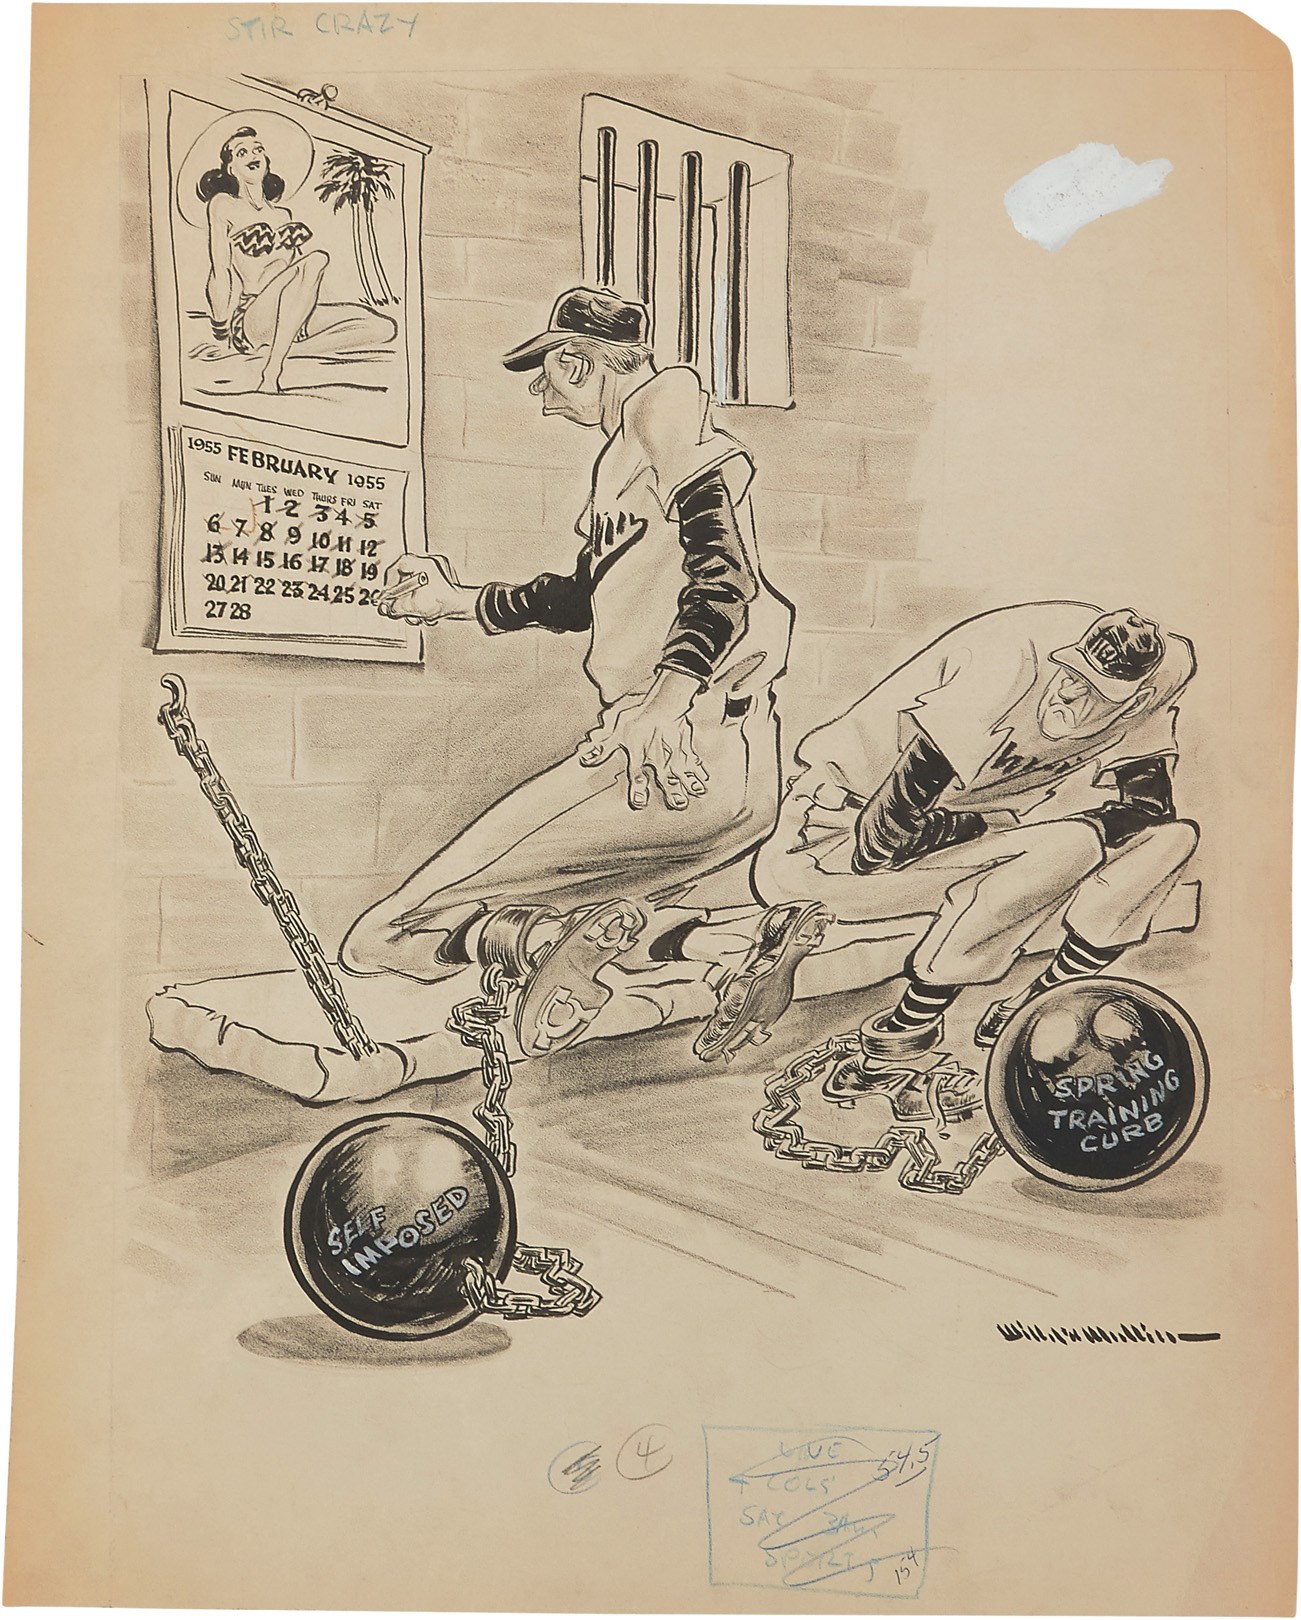 1955 Sporting News Original Art by Willard Mullin - Betty Page, Prison & Baseball